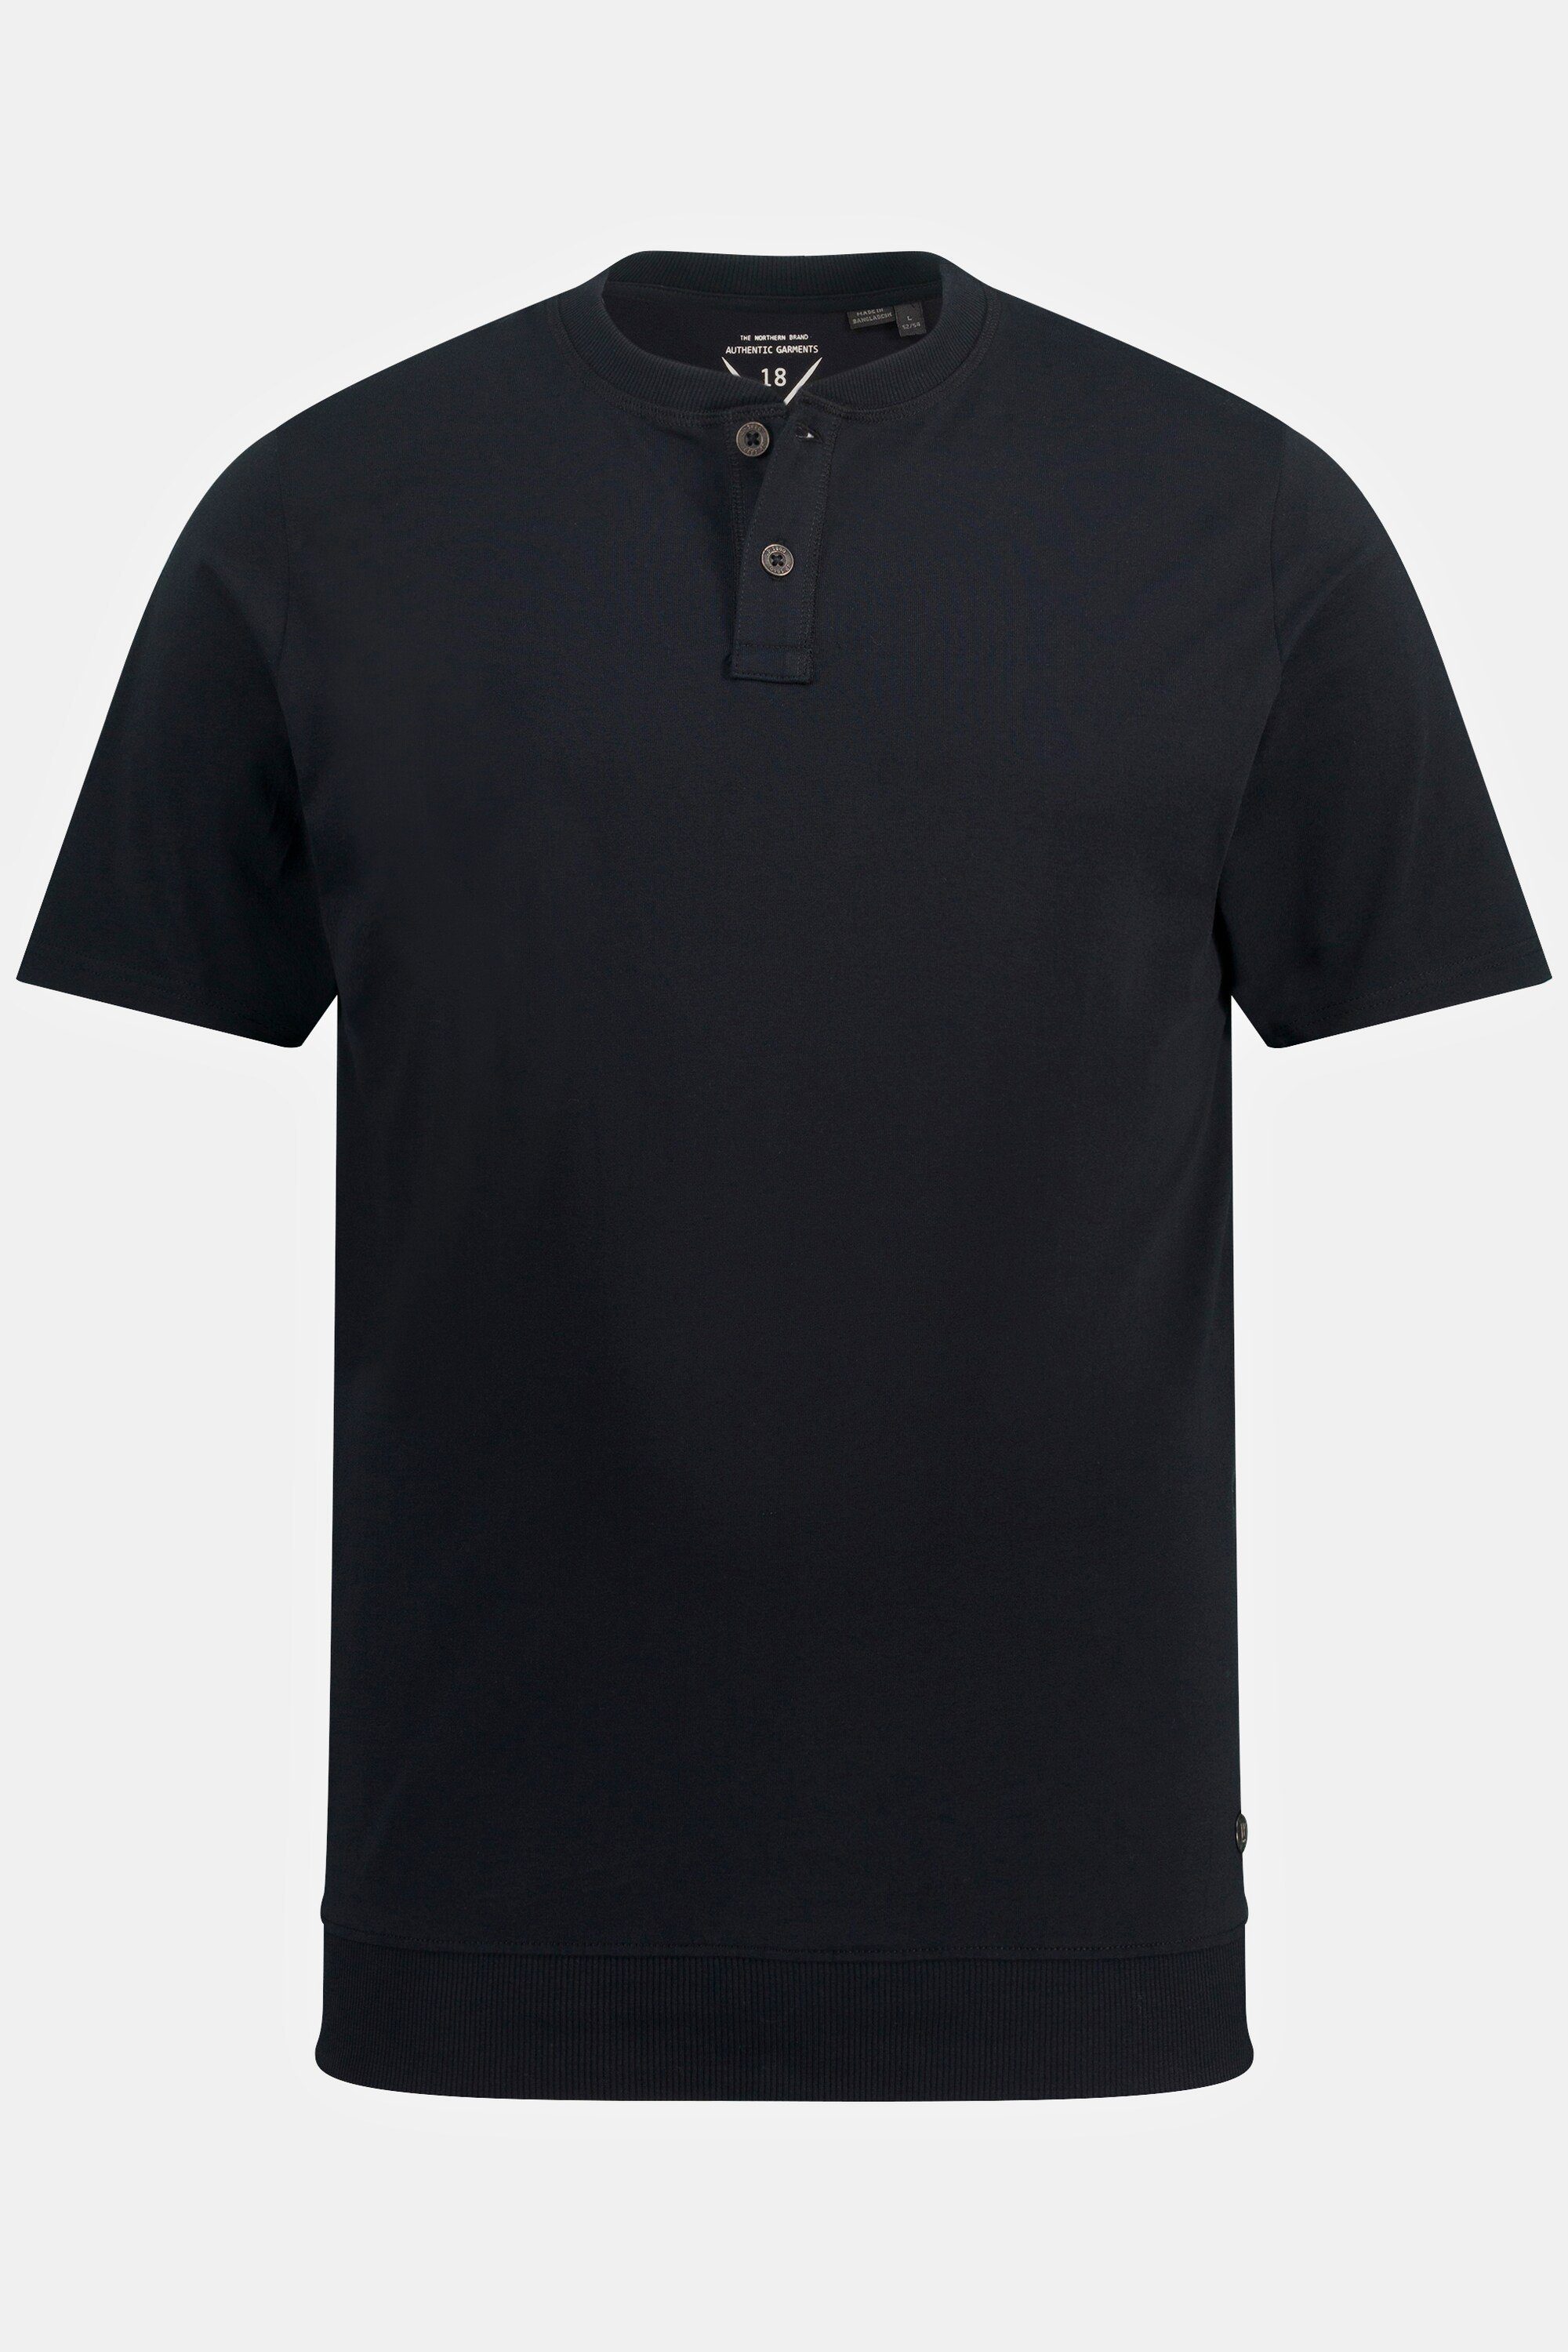 JP1880 T-Shirt Henley Bauchfit Halbarm bis Rundhals 8 XL schwarz